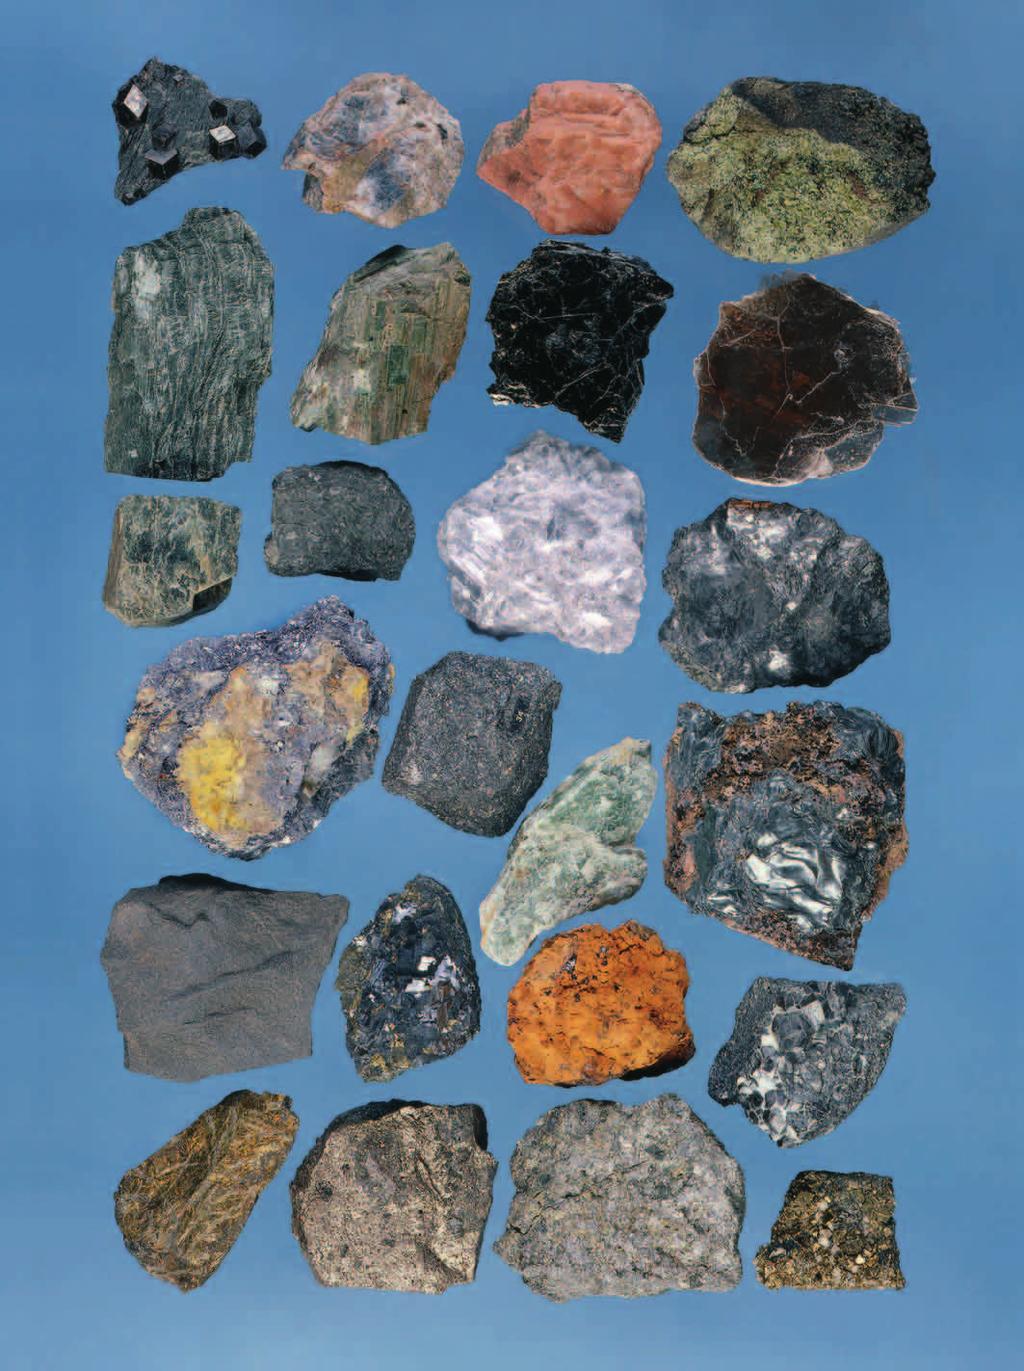 Kun tuntee maasälvät, siis plagioklaasin ja kalimaasälvän ylärivissä keskellä, niin osaa jo tunnistaa yli puolet maanpinnalla vastaan tulevista mineraaleista.